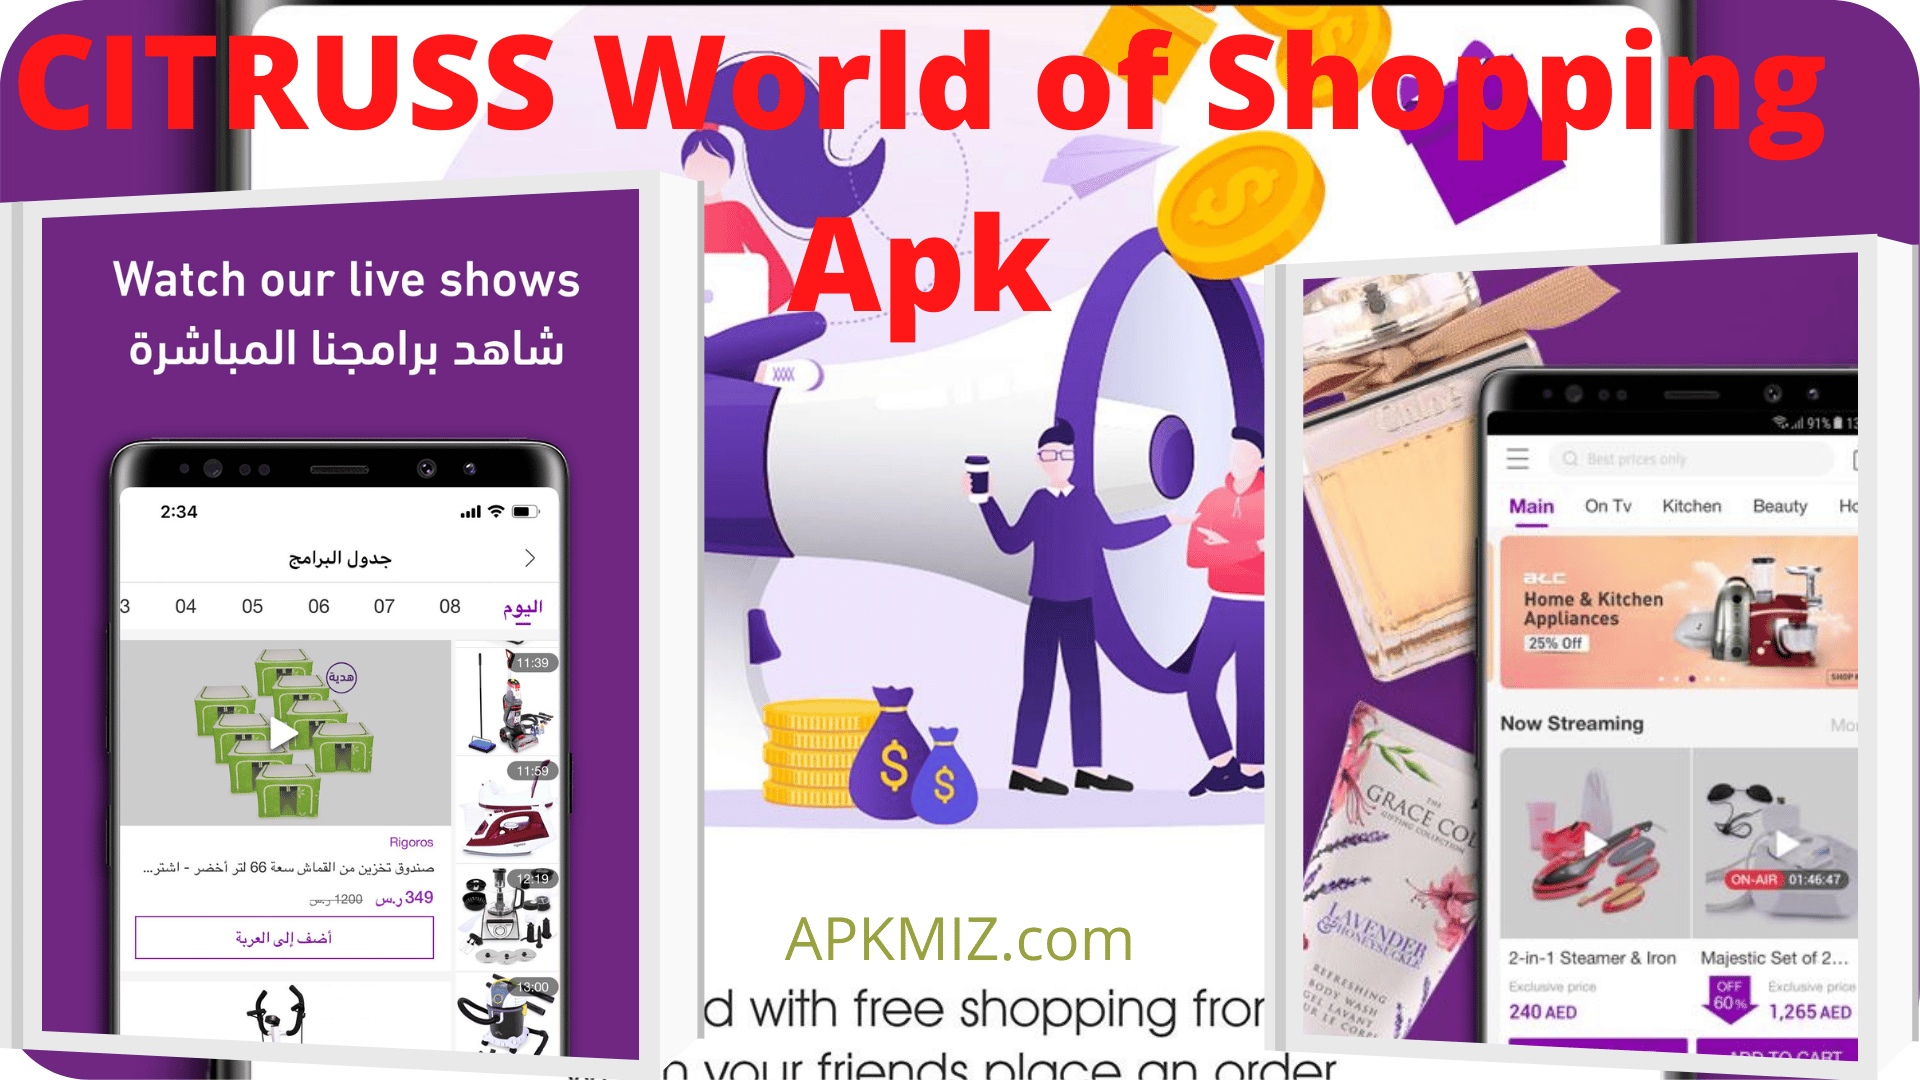 CITRUSS World of Shopping Apk